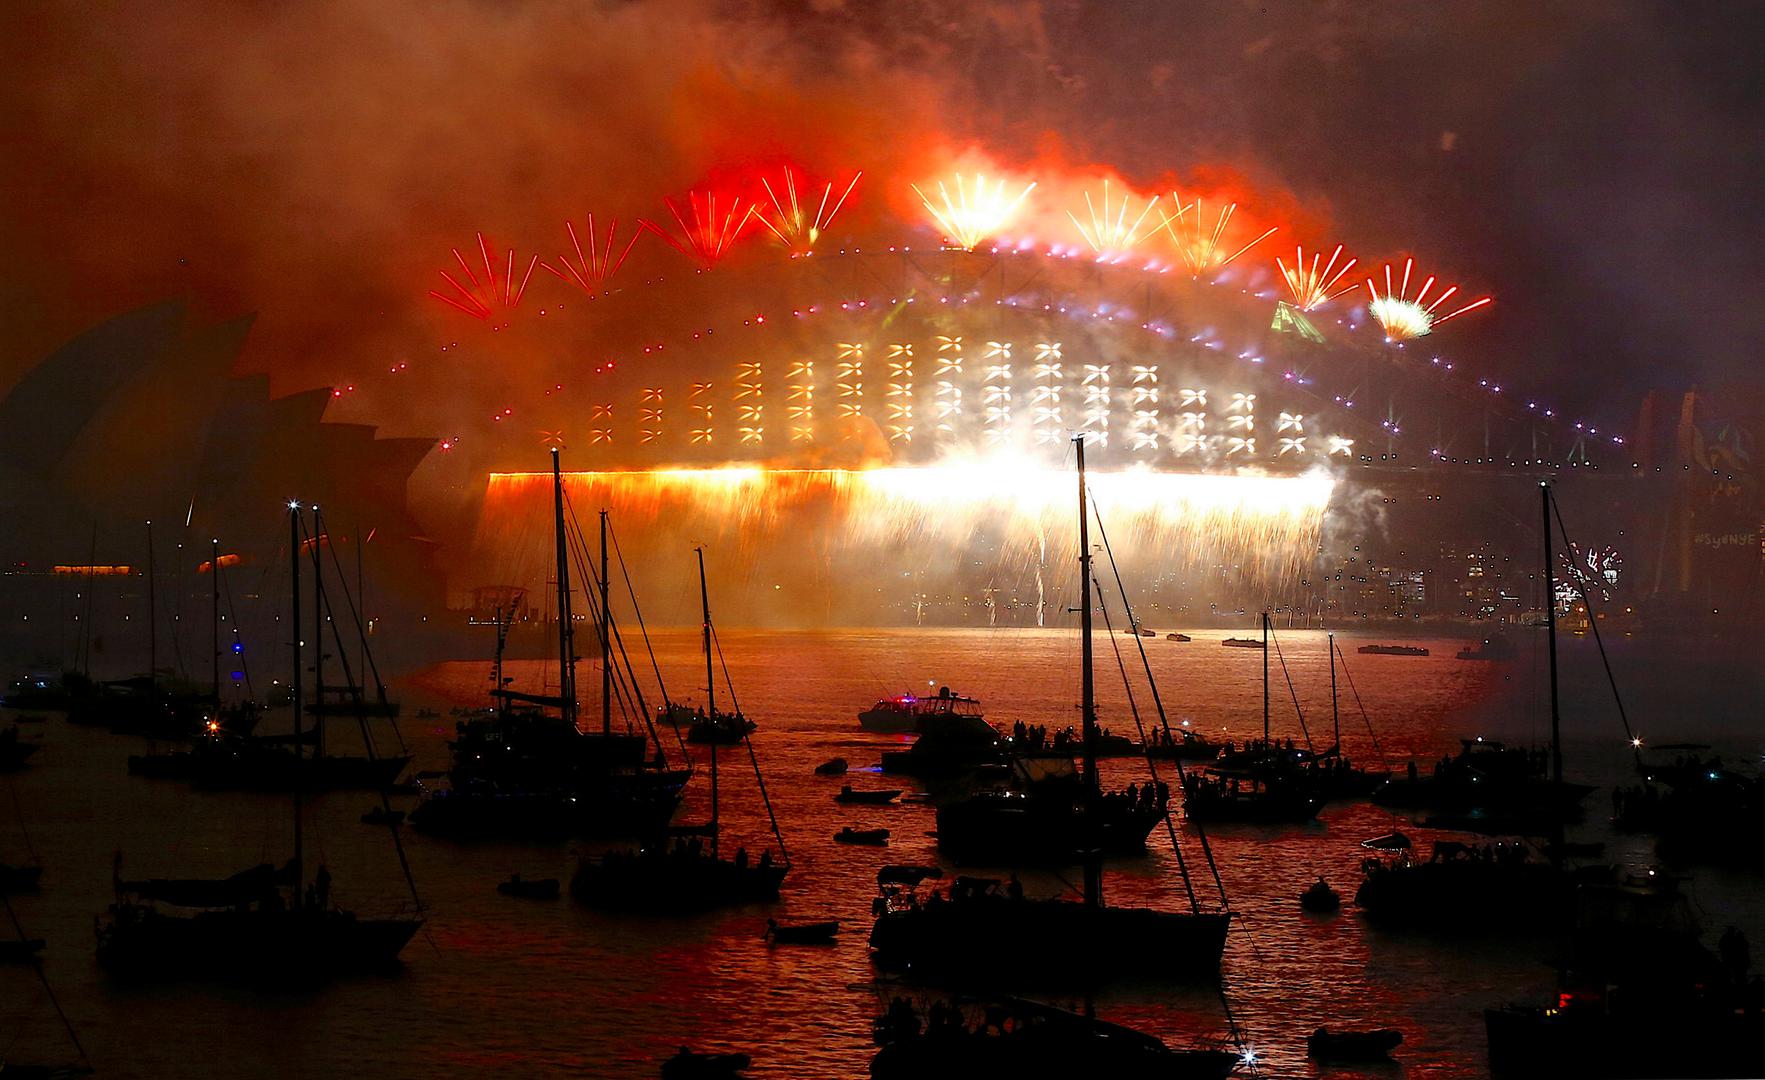 Oko 1,5 milijuna ljudi okupilo se na obali Sydneya kako bi gledali vatromet iznad tog povijesnog mosta i slavne operne kuće, a to je bila prva velika proslava Nove godine nakon Novog Zelanda. 